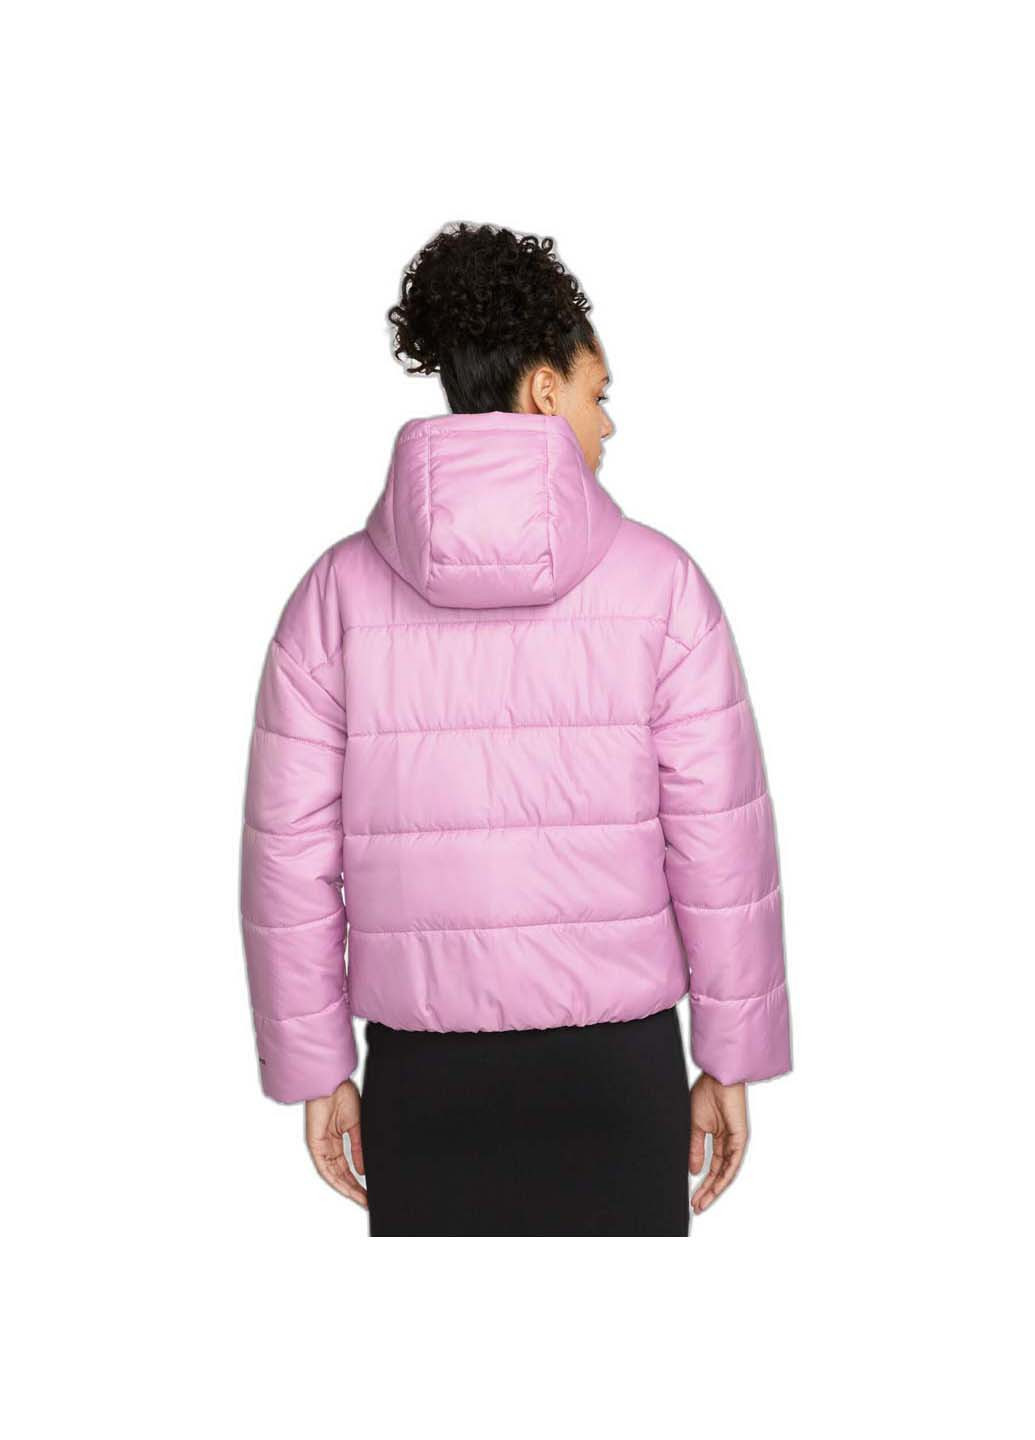 Розовая демисезонная куртка w nsw syn tf rpl hd jkt Nike